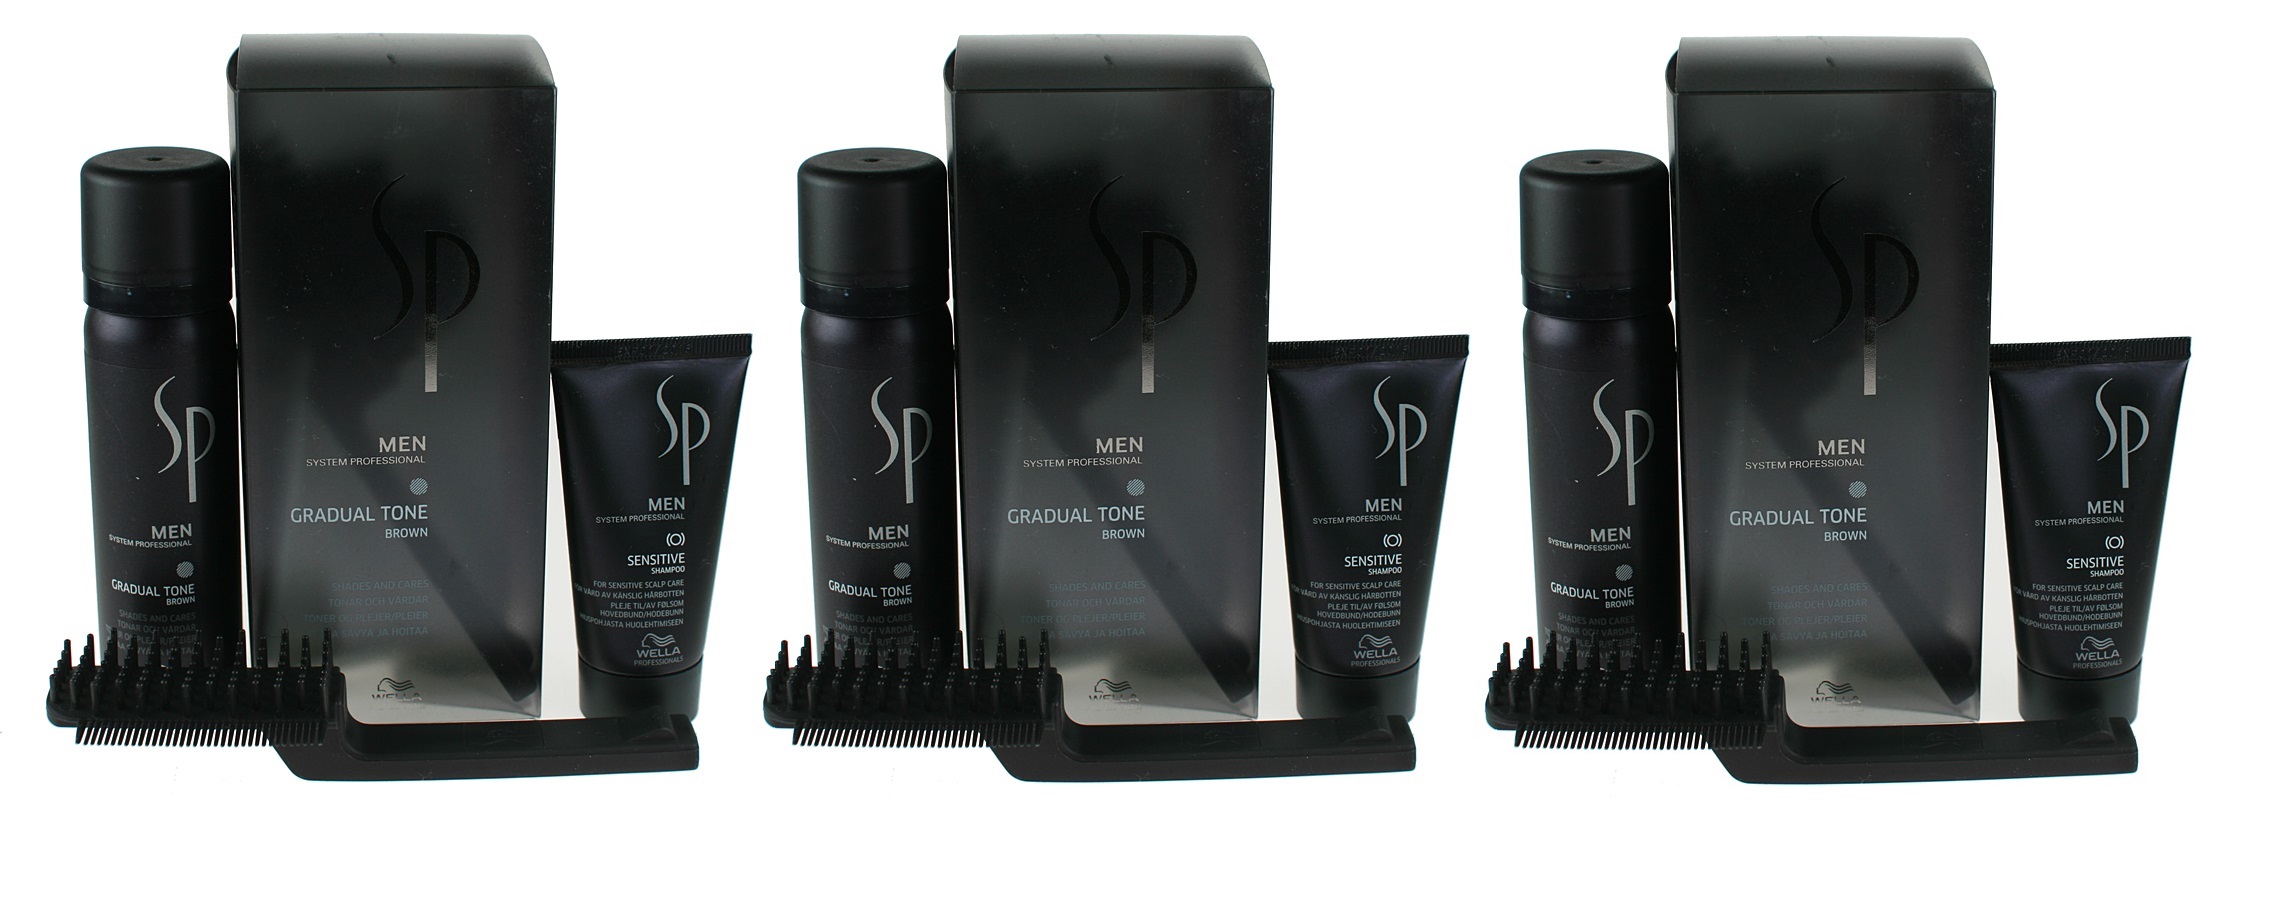 SP Men Gradual Tone Brown | Zestaw do włosów brąz - pianka pigmentująca + szampon + szczotka x3